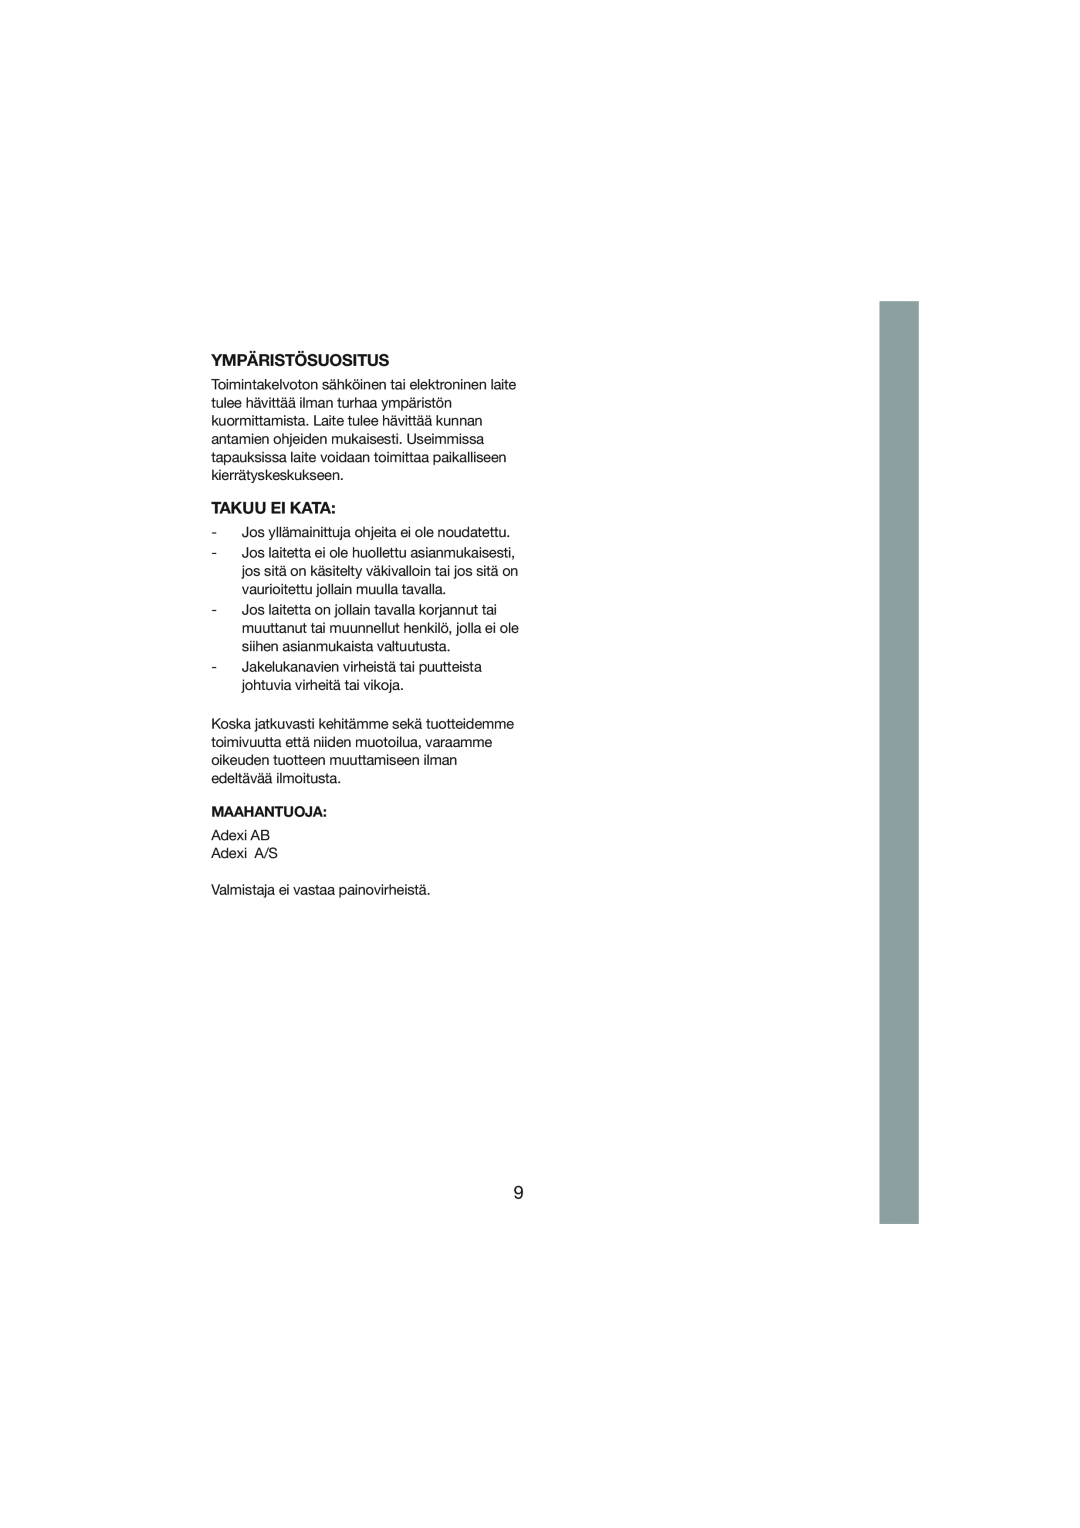 Melissa 244-001 manual Ympäristösuositus, Takuu Ei Kata, Maahantuoja 